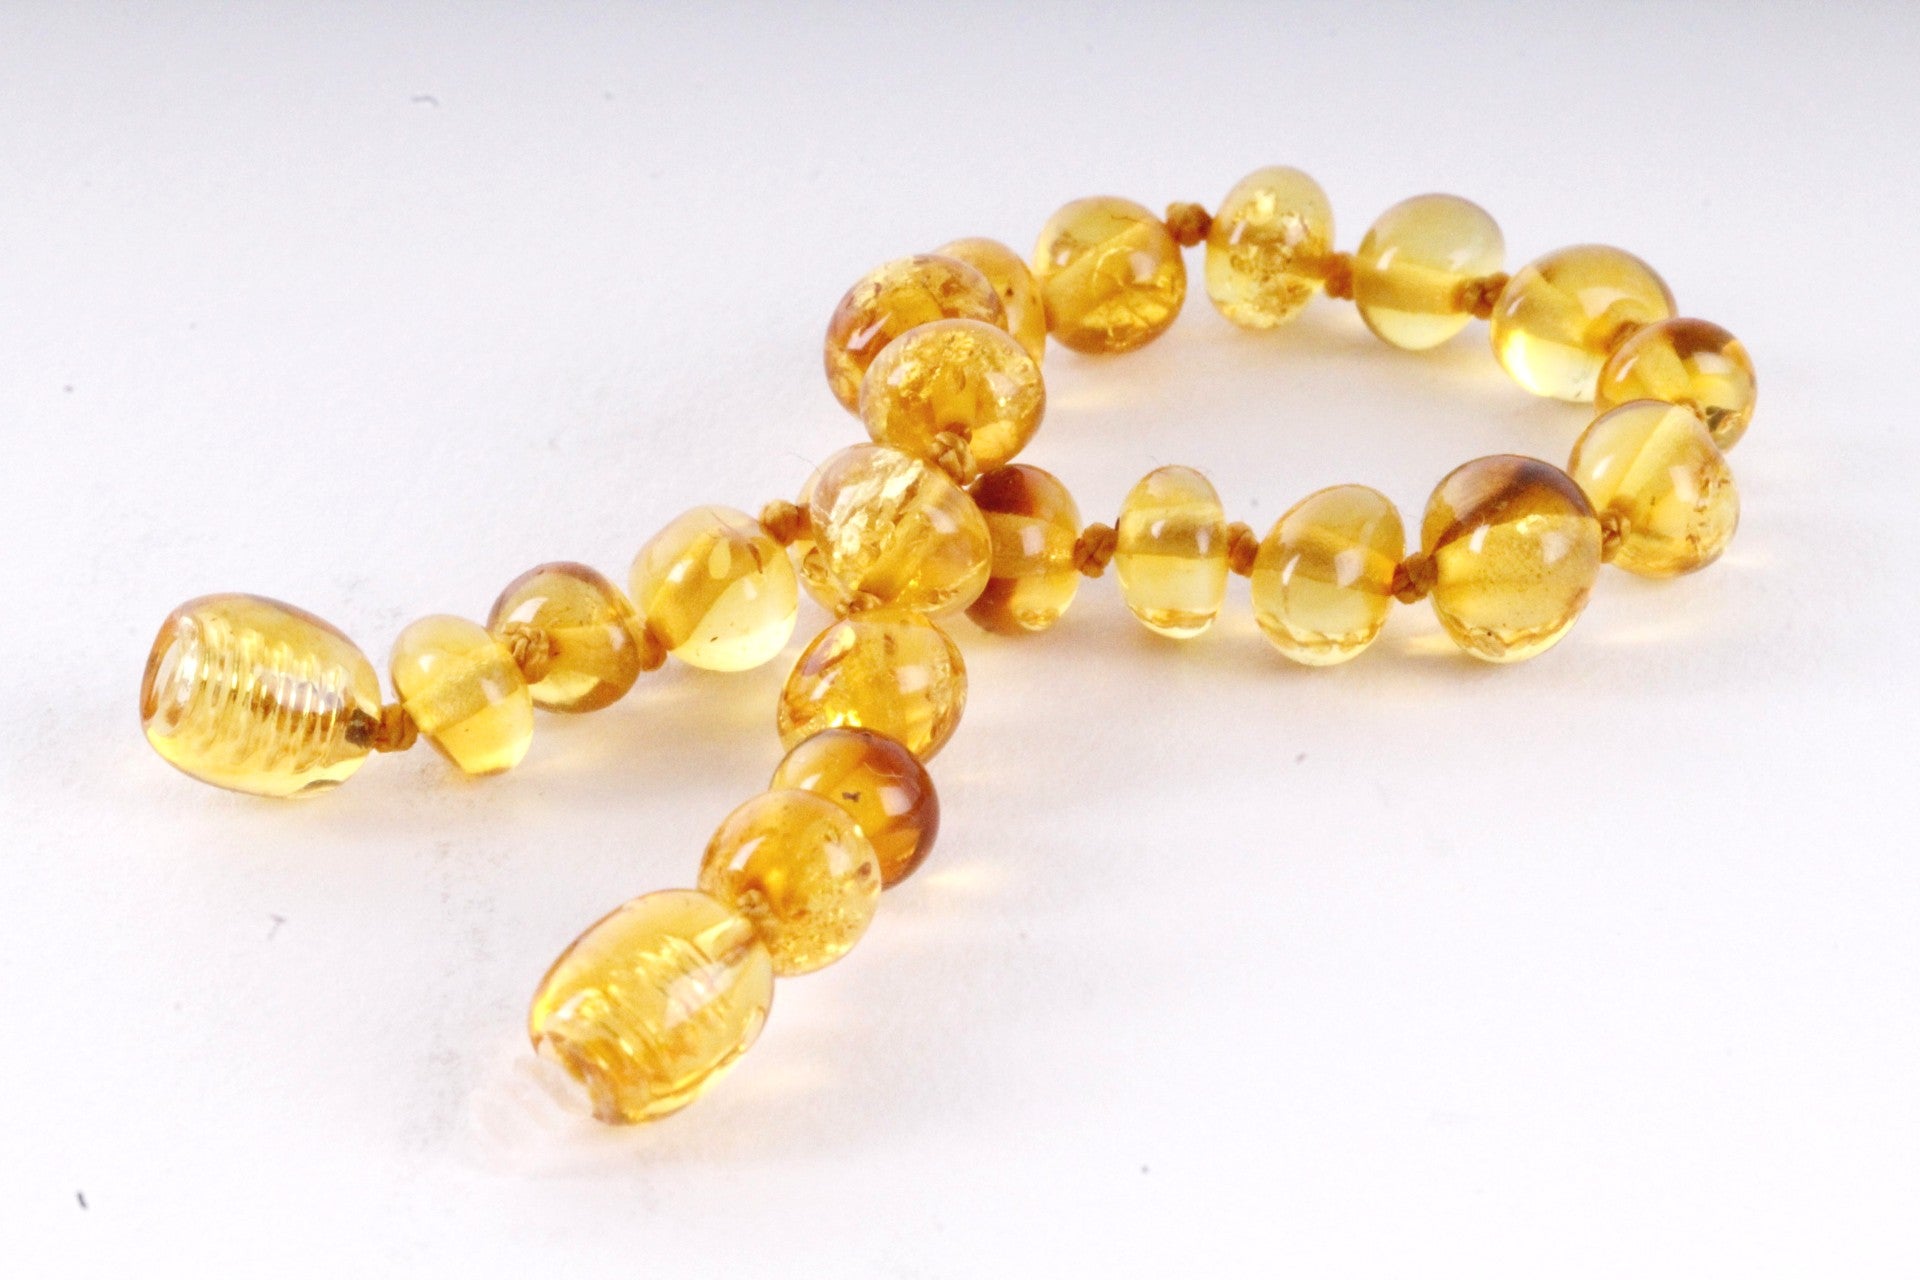 Amber Anklet Honey Beads Amber SOS